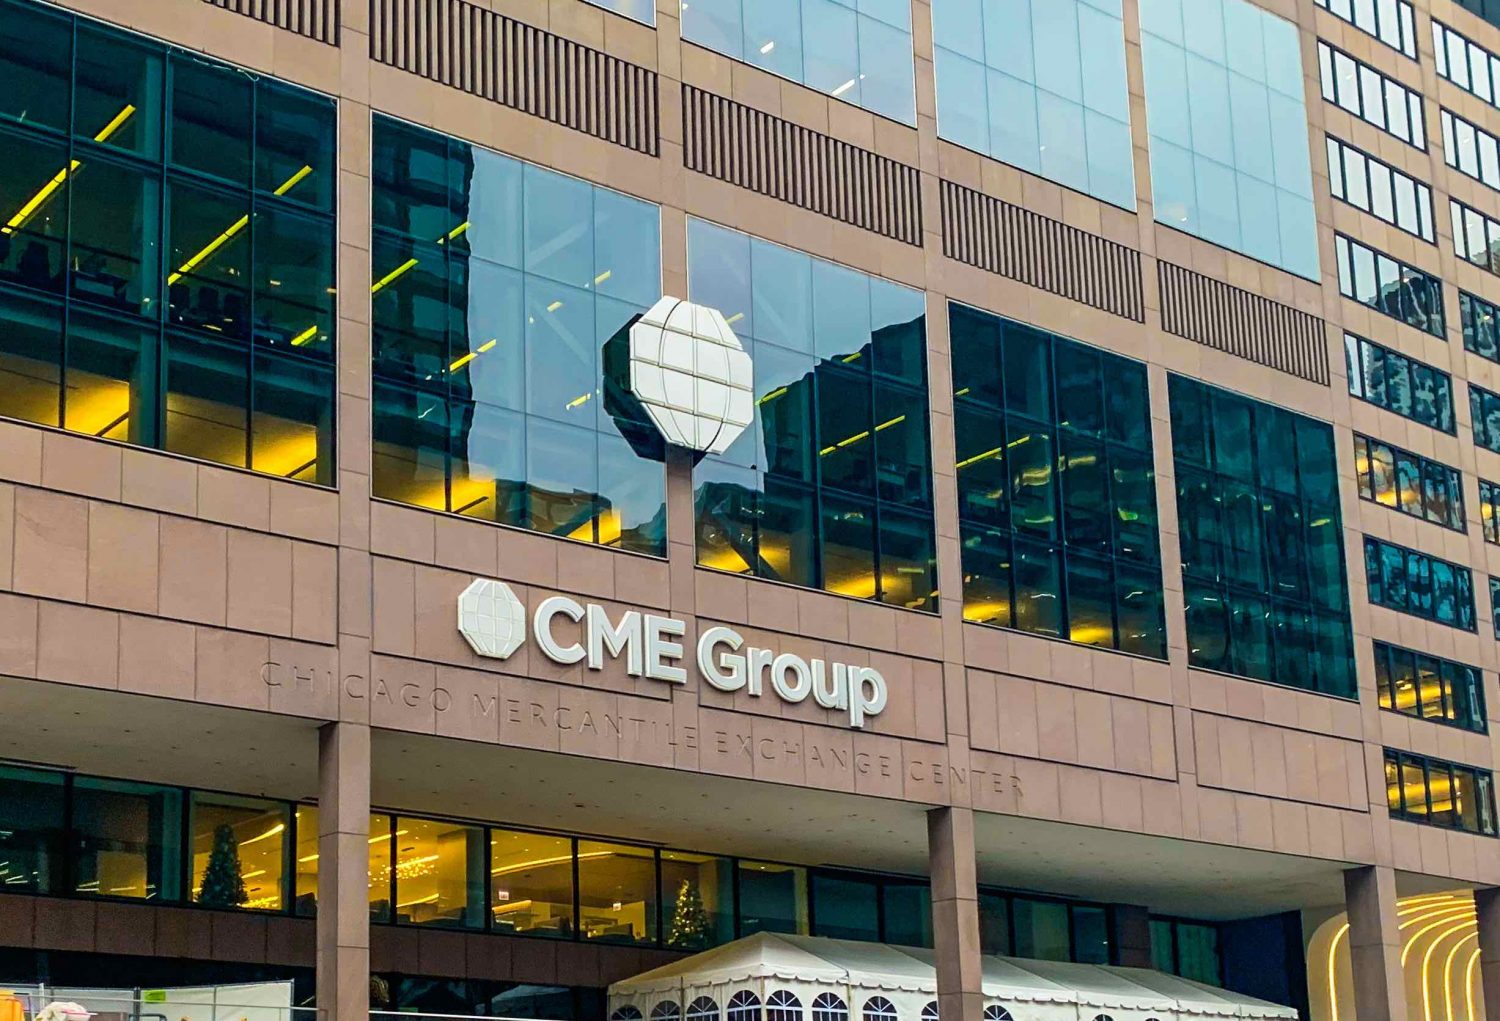 سي ام اي جروب CME Group تتطلع إلى عمليات الاستحواذ بعد ثلاث سنوات من نمو الأرباح برقم مزدوج